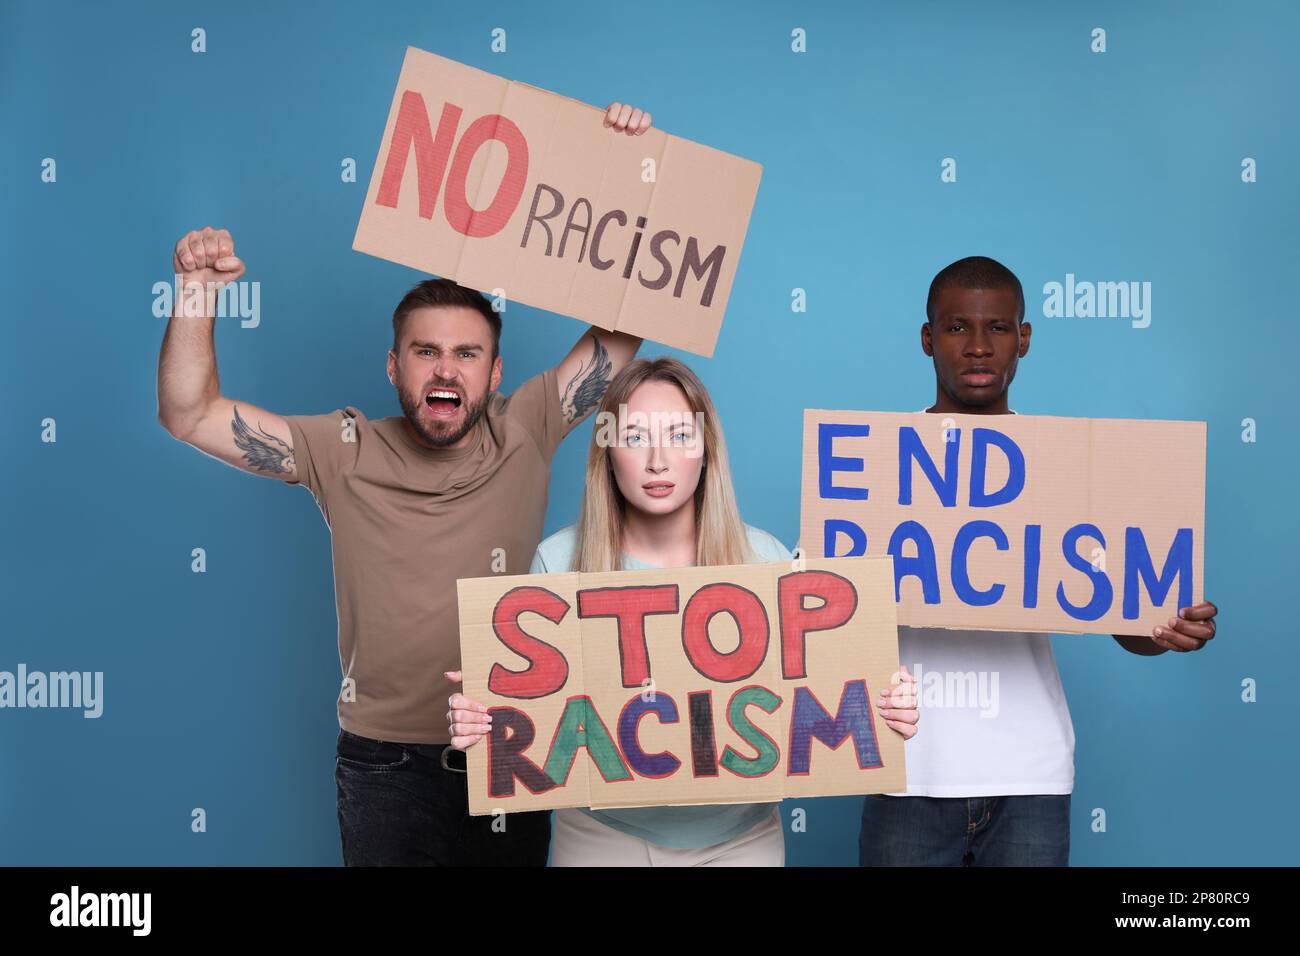 Les manifestants manifestent différents slogans anti-racisme sur fond bleu clair. Personnes portant des signes avec des phrases Banque D'Images